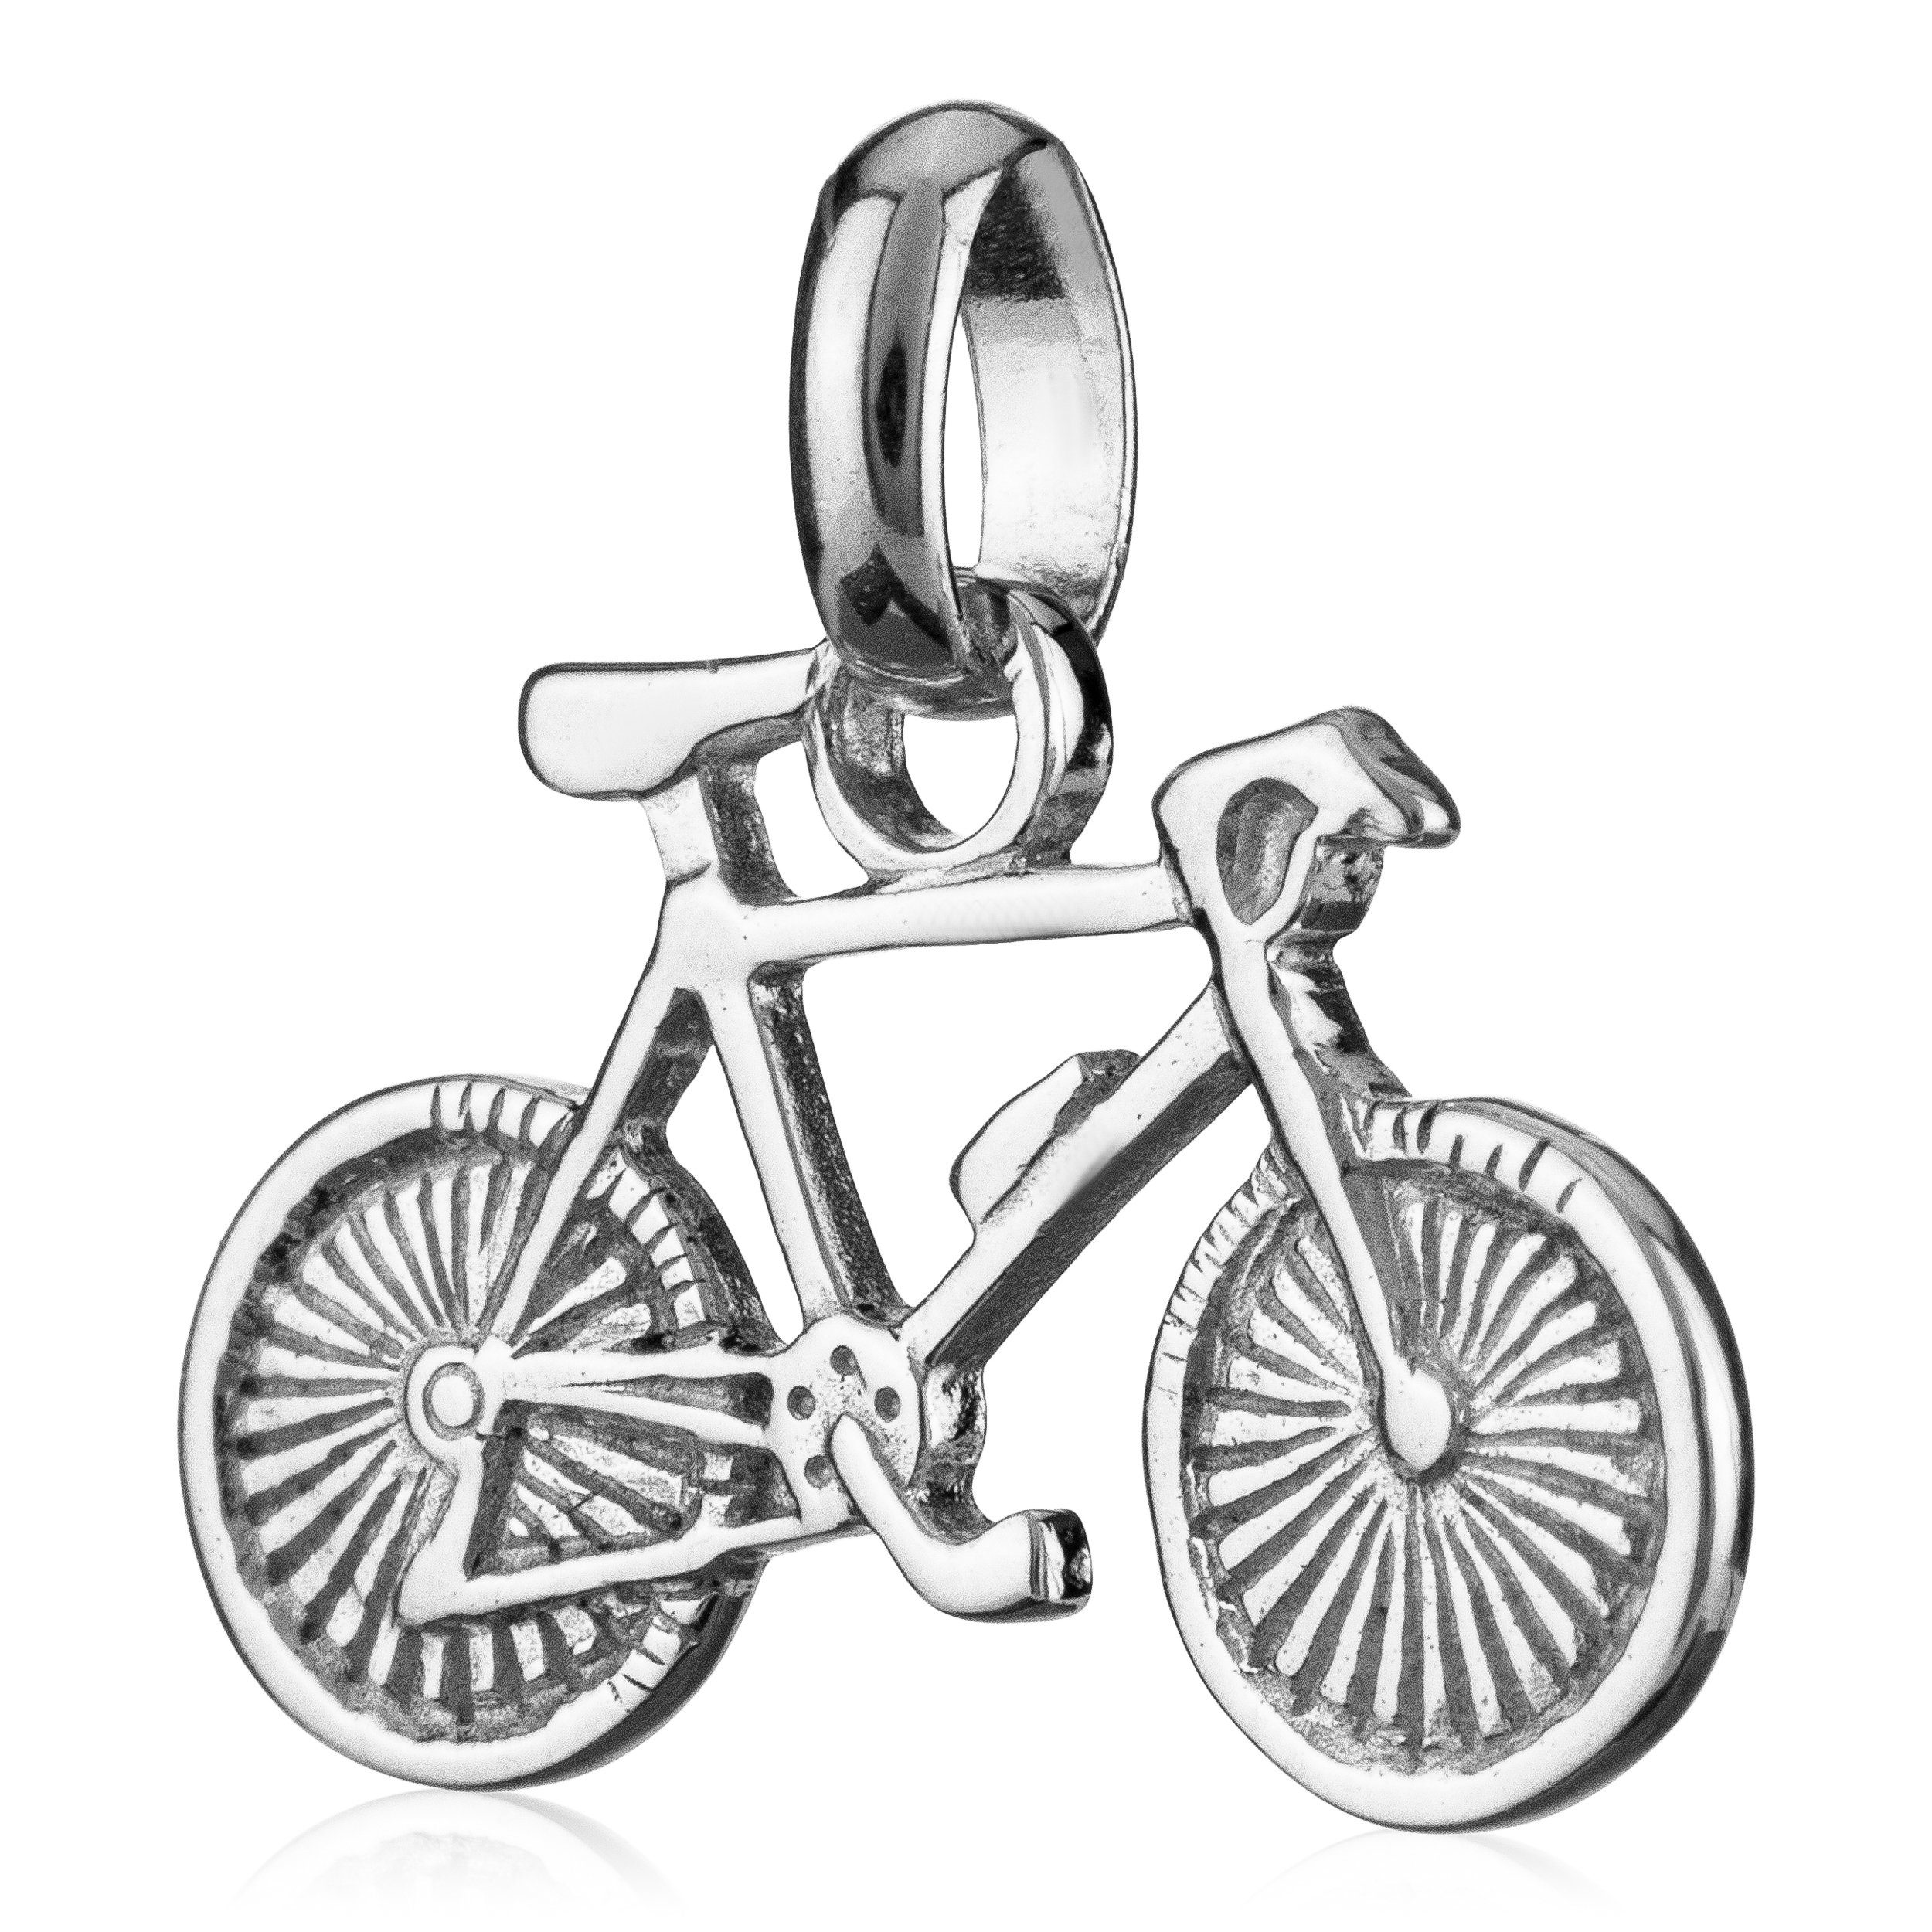 Silber Kettenanhänger 92 NKlaus klein 9x17mm Bike Kettenanhänger Fahrrad